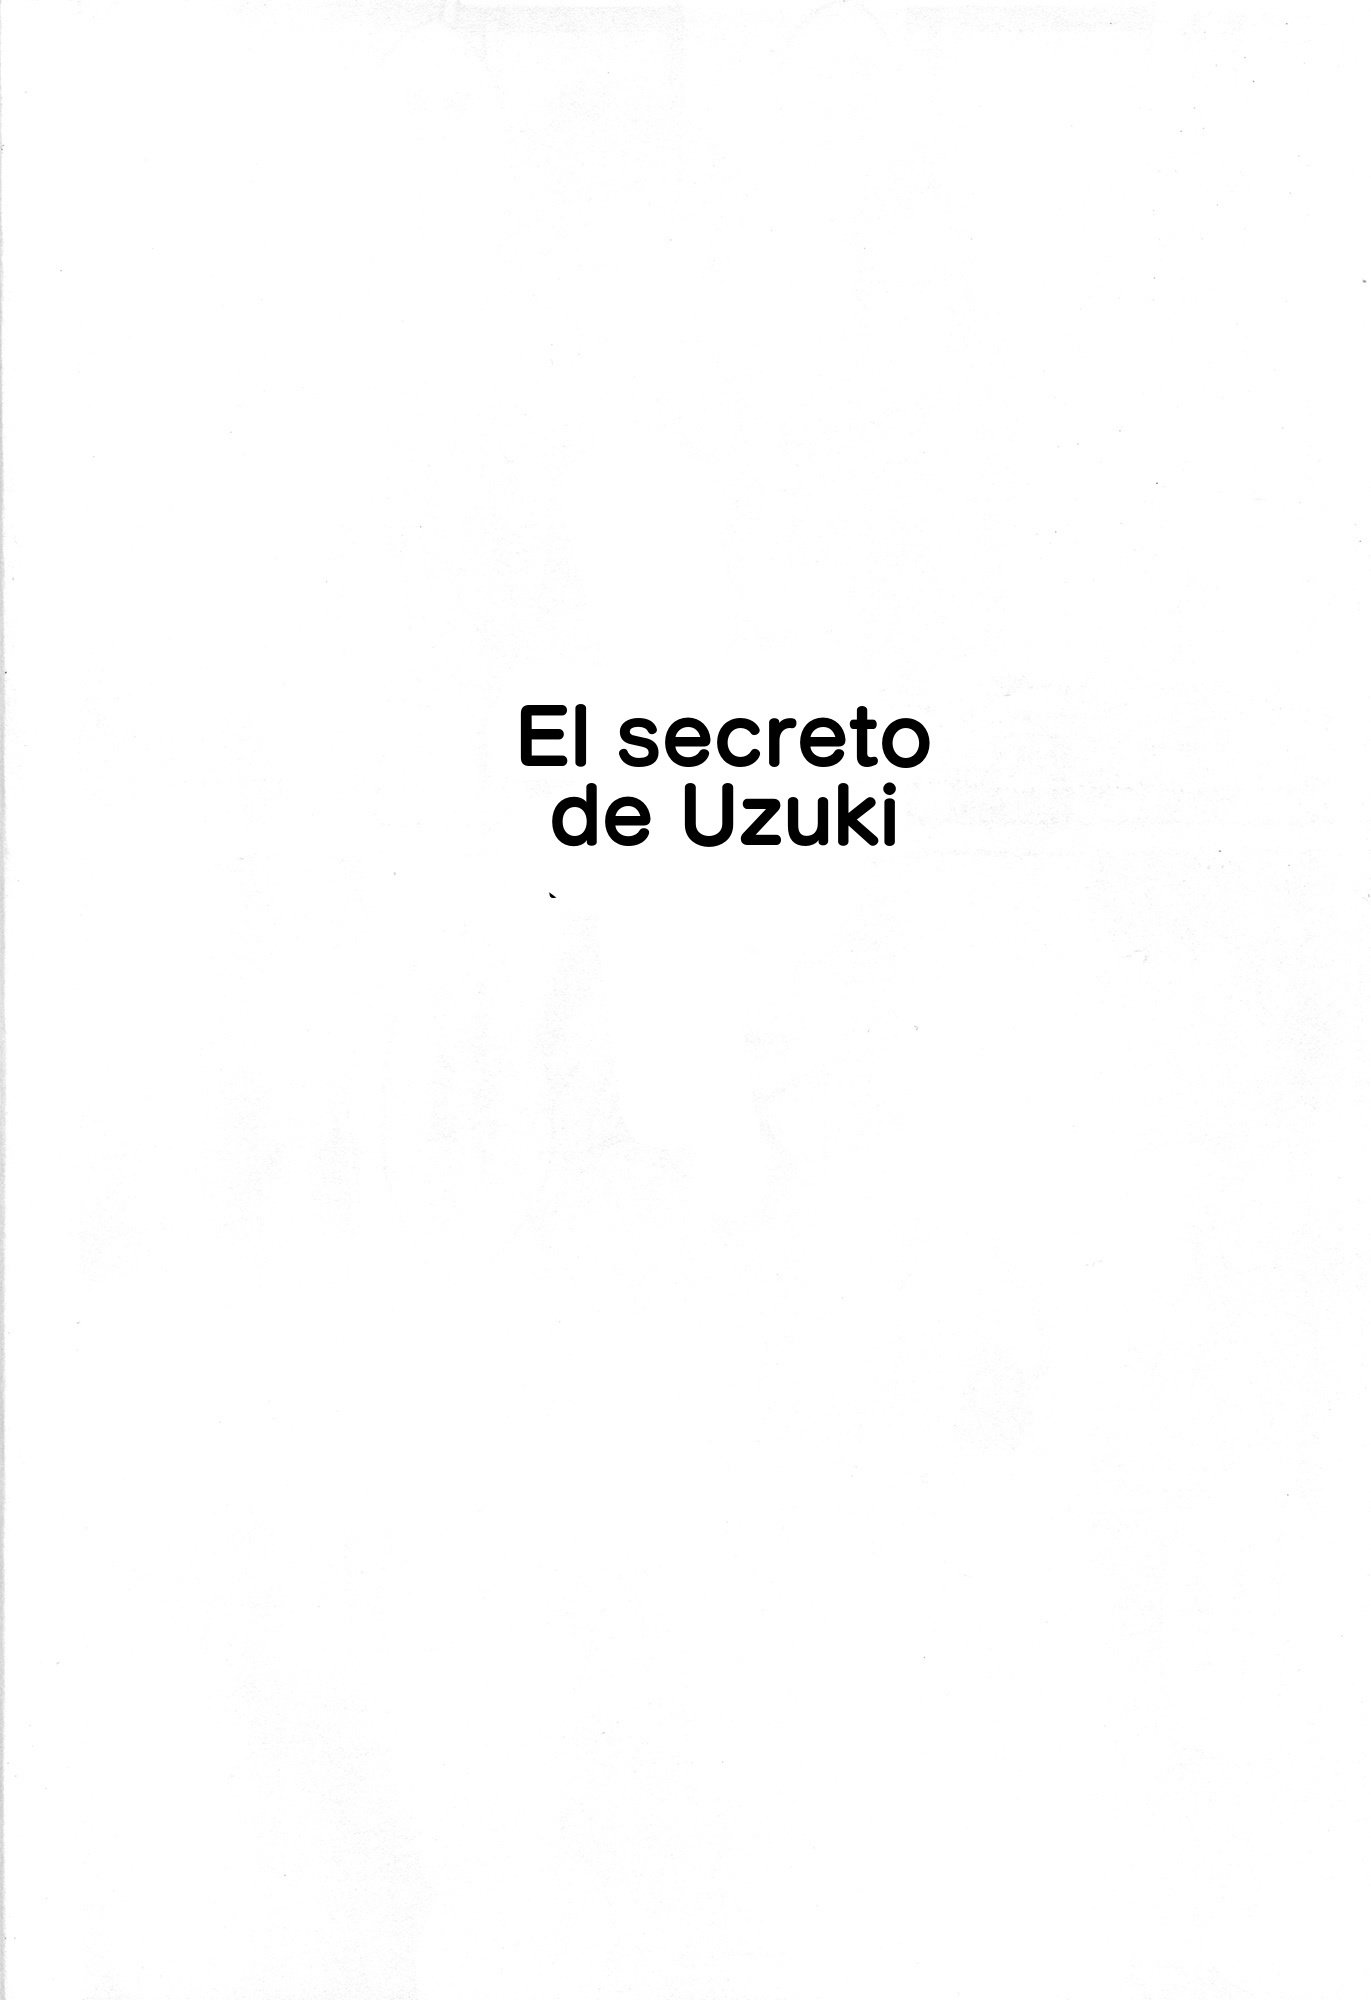 El secreto de Uzuki